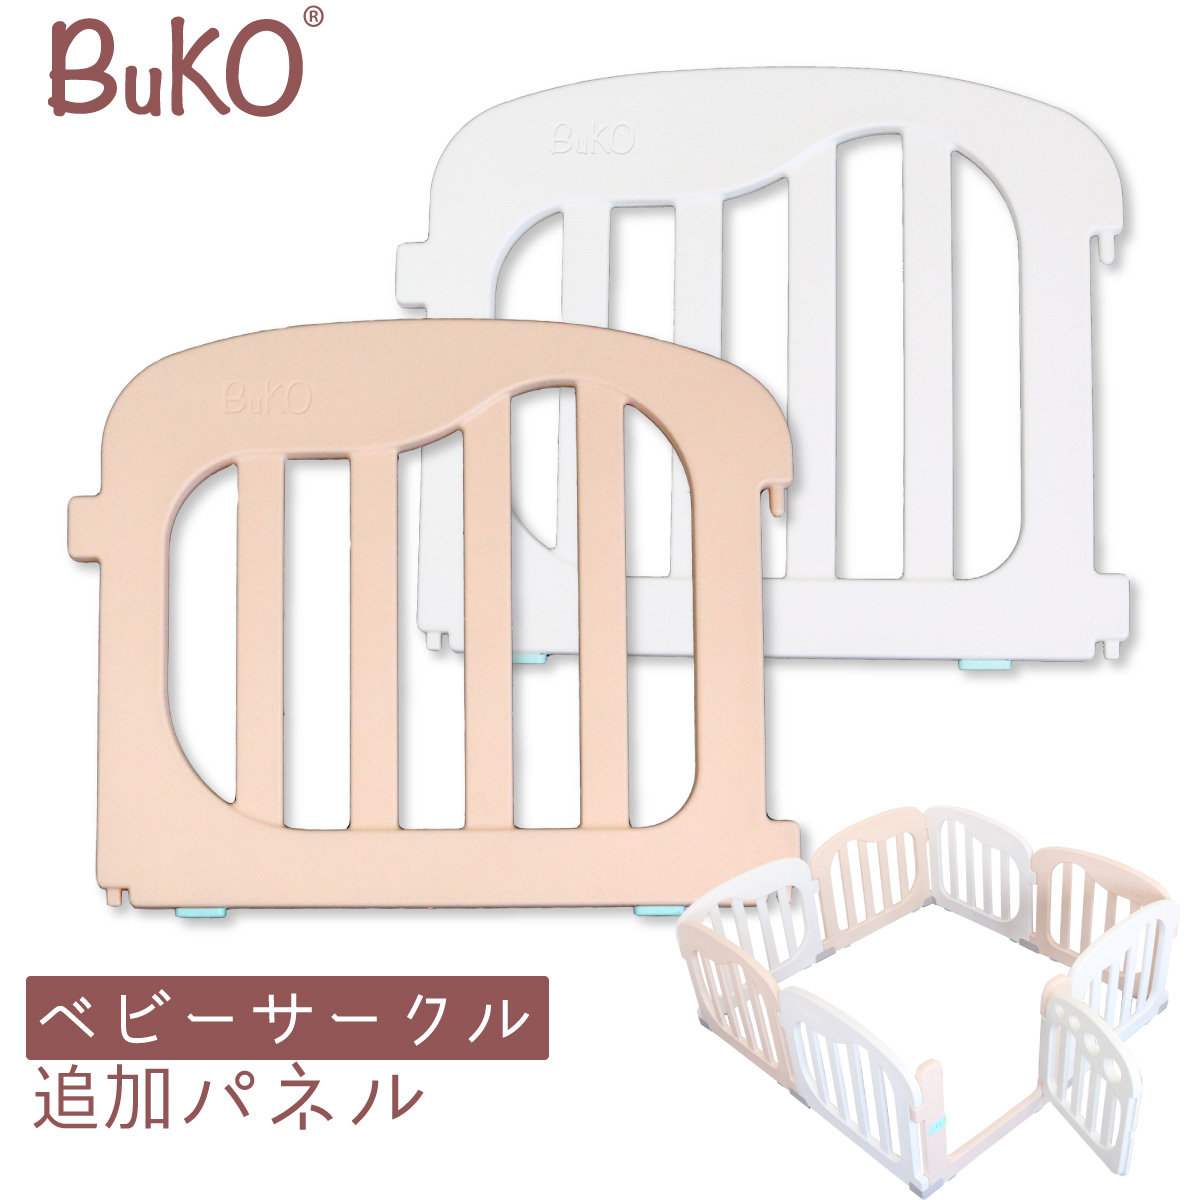 BuKO ベビーサークルの拡張用パネル ベビーサークル 追加パネル 2枚セット メイルオーダー ベビー サークル 赤ちゃん ベビーゲート キッズ 最新号掲載アイテム セーフィティグッズ プレイペン こども フェンス ベビーガード プレイヤード